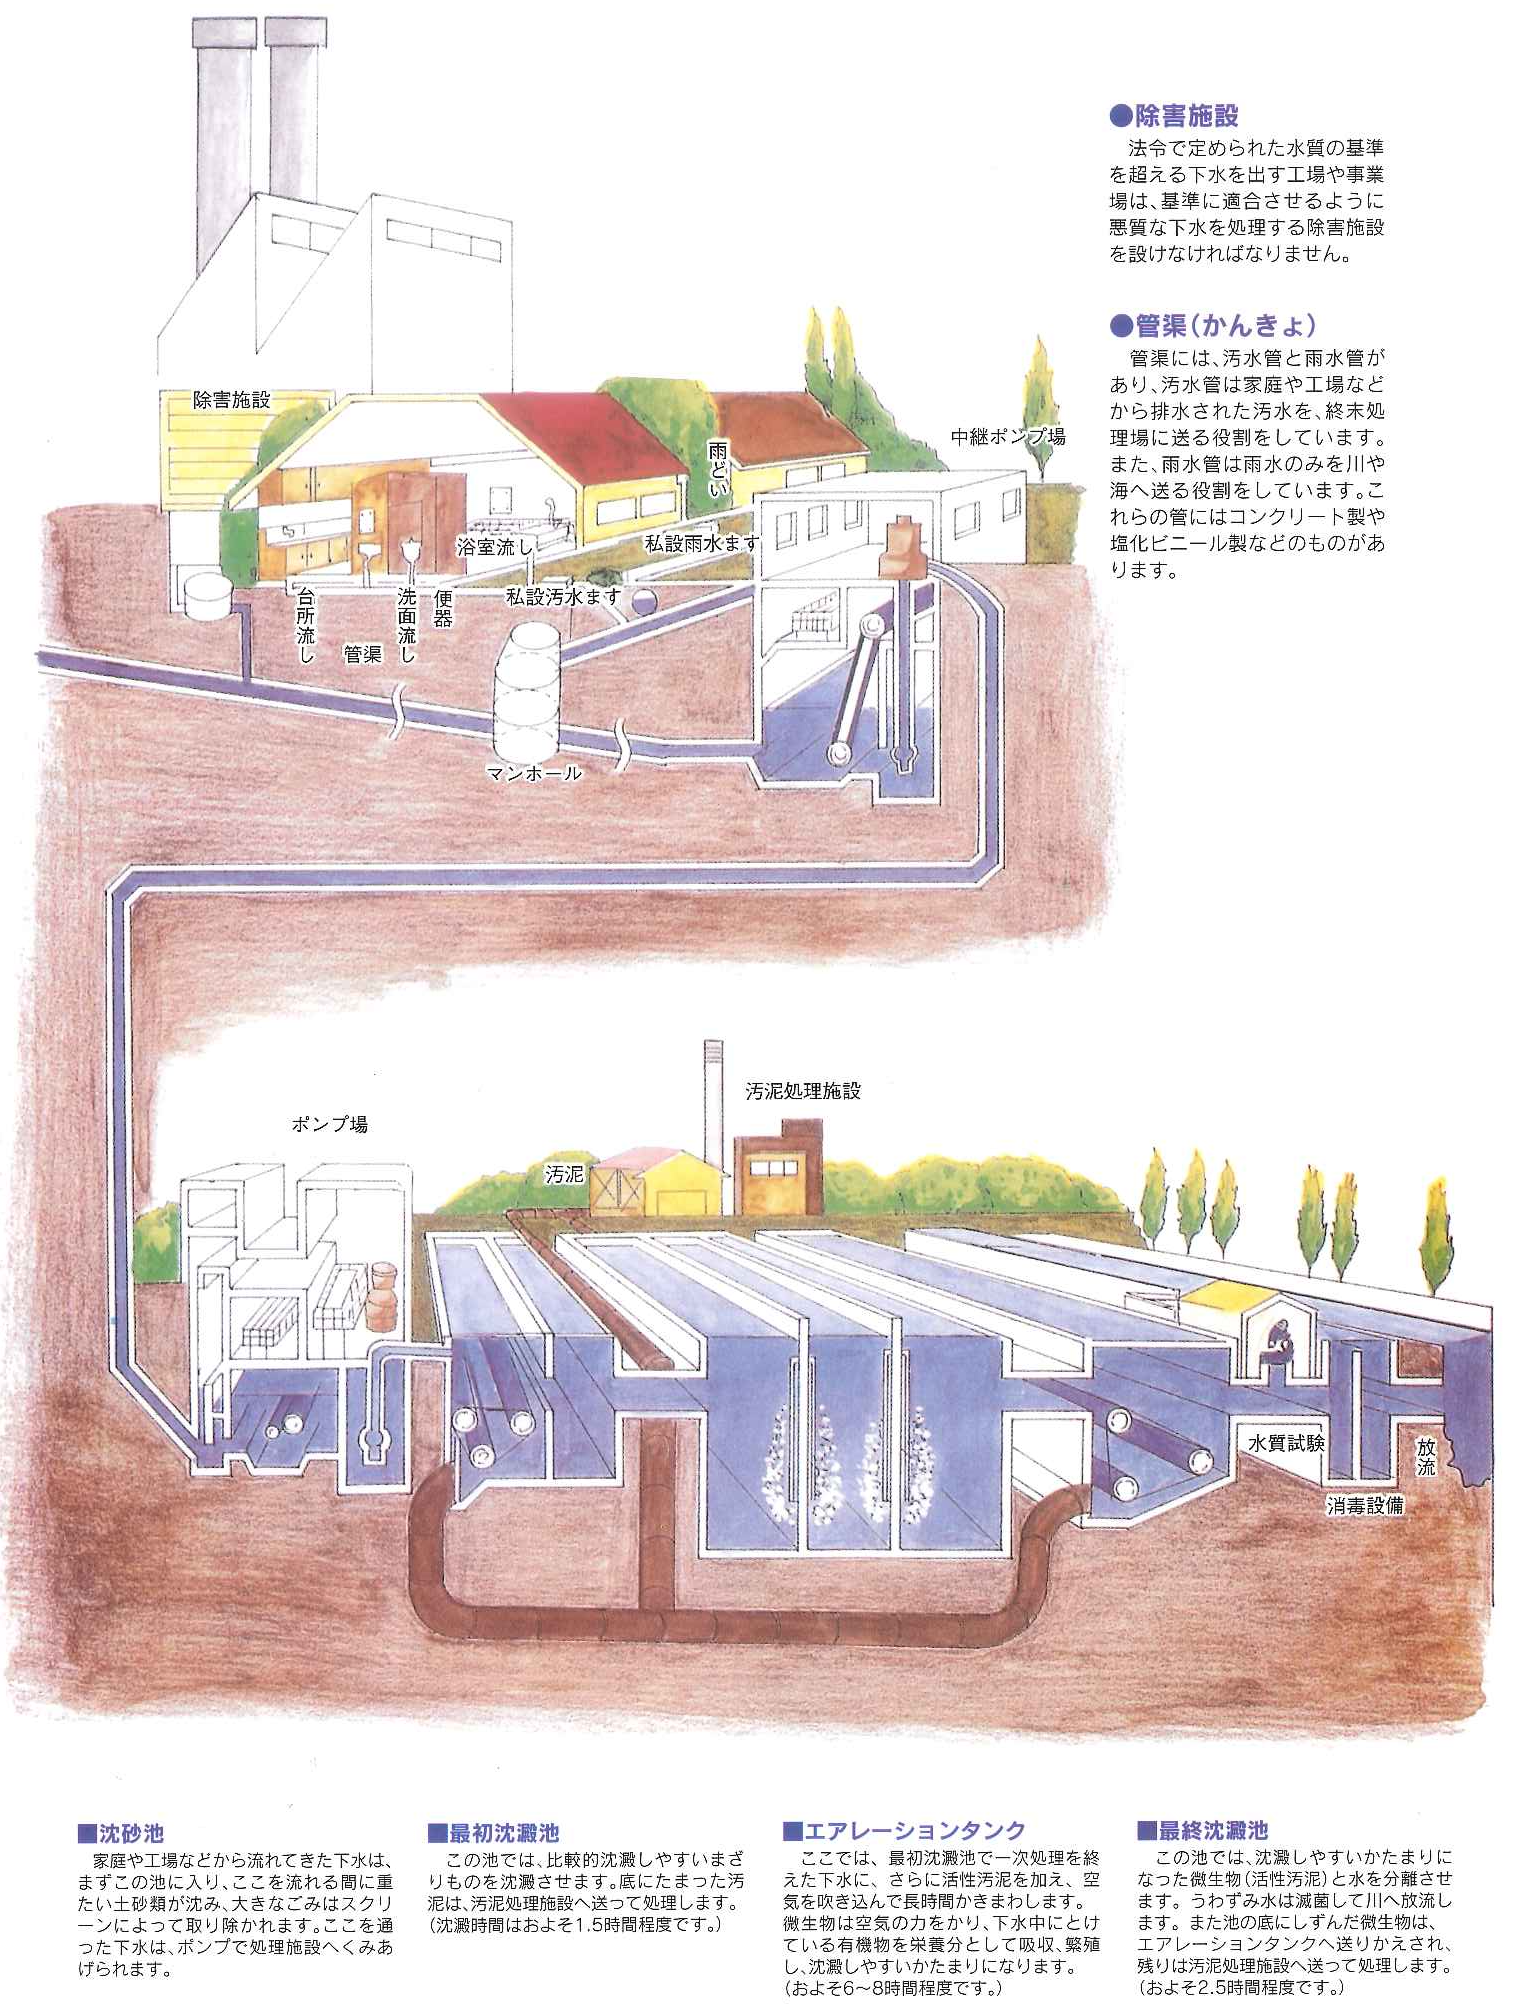 向上や家庭から出た排水が浄化されるまでに通る工程と設備の説明が書かれたイラスト